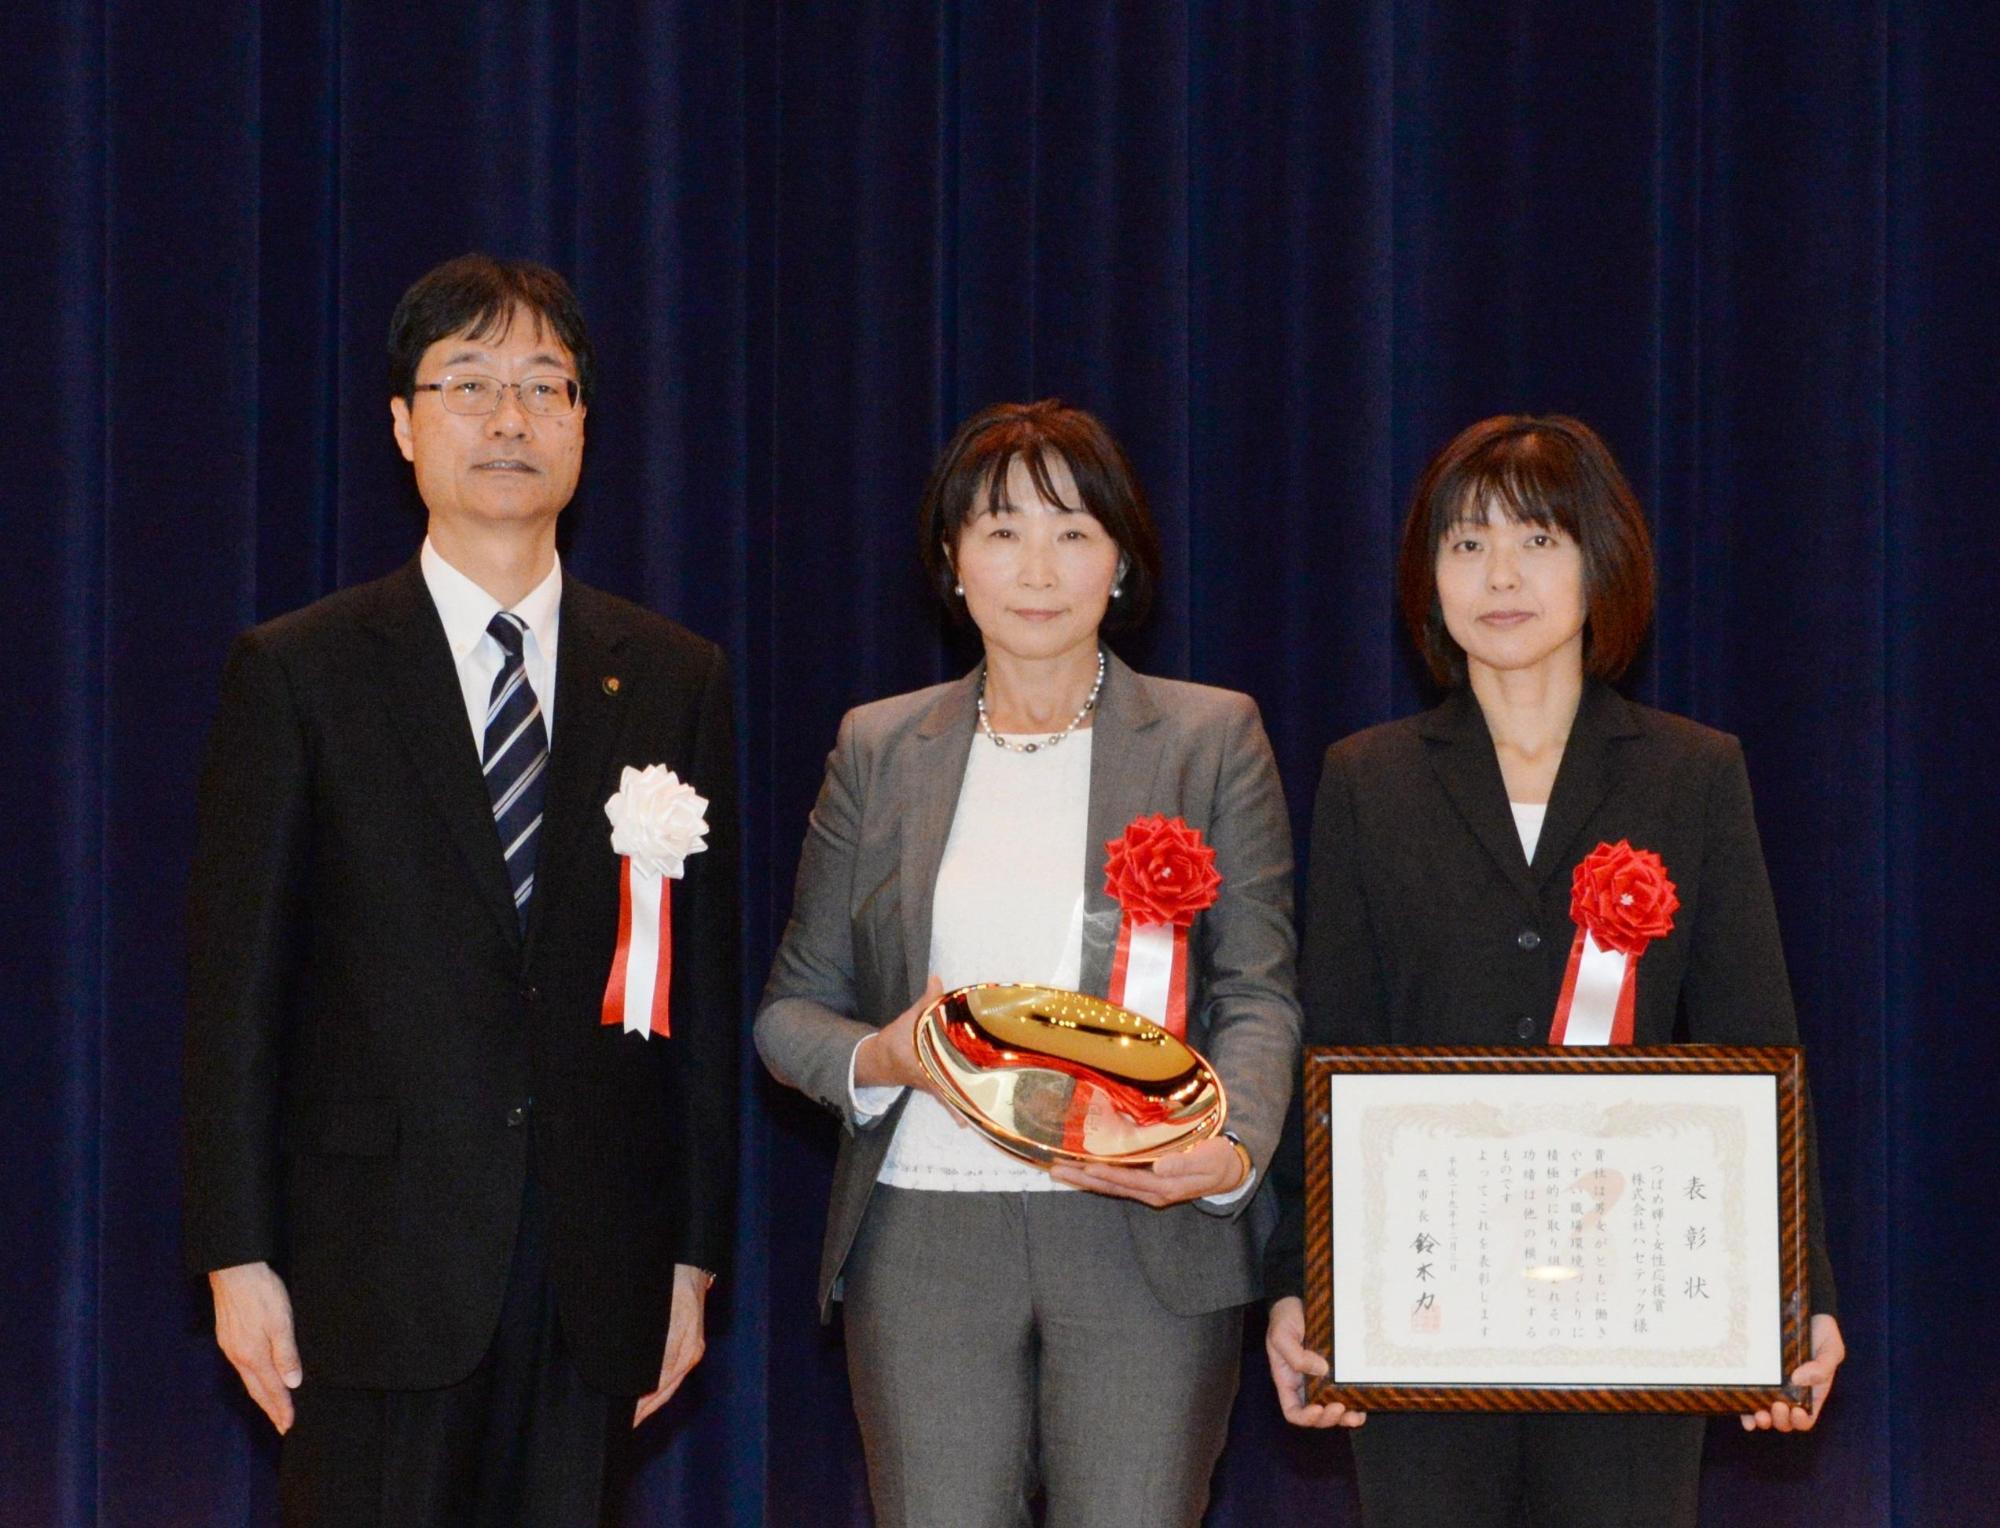 楯を持つばめ輝く女性応援賞を受賞した女性と賞状を持つ女性と市長の写真